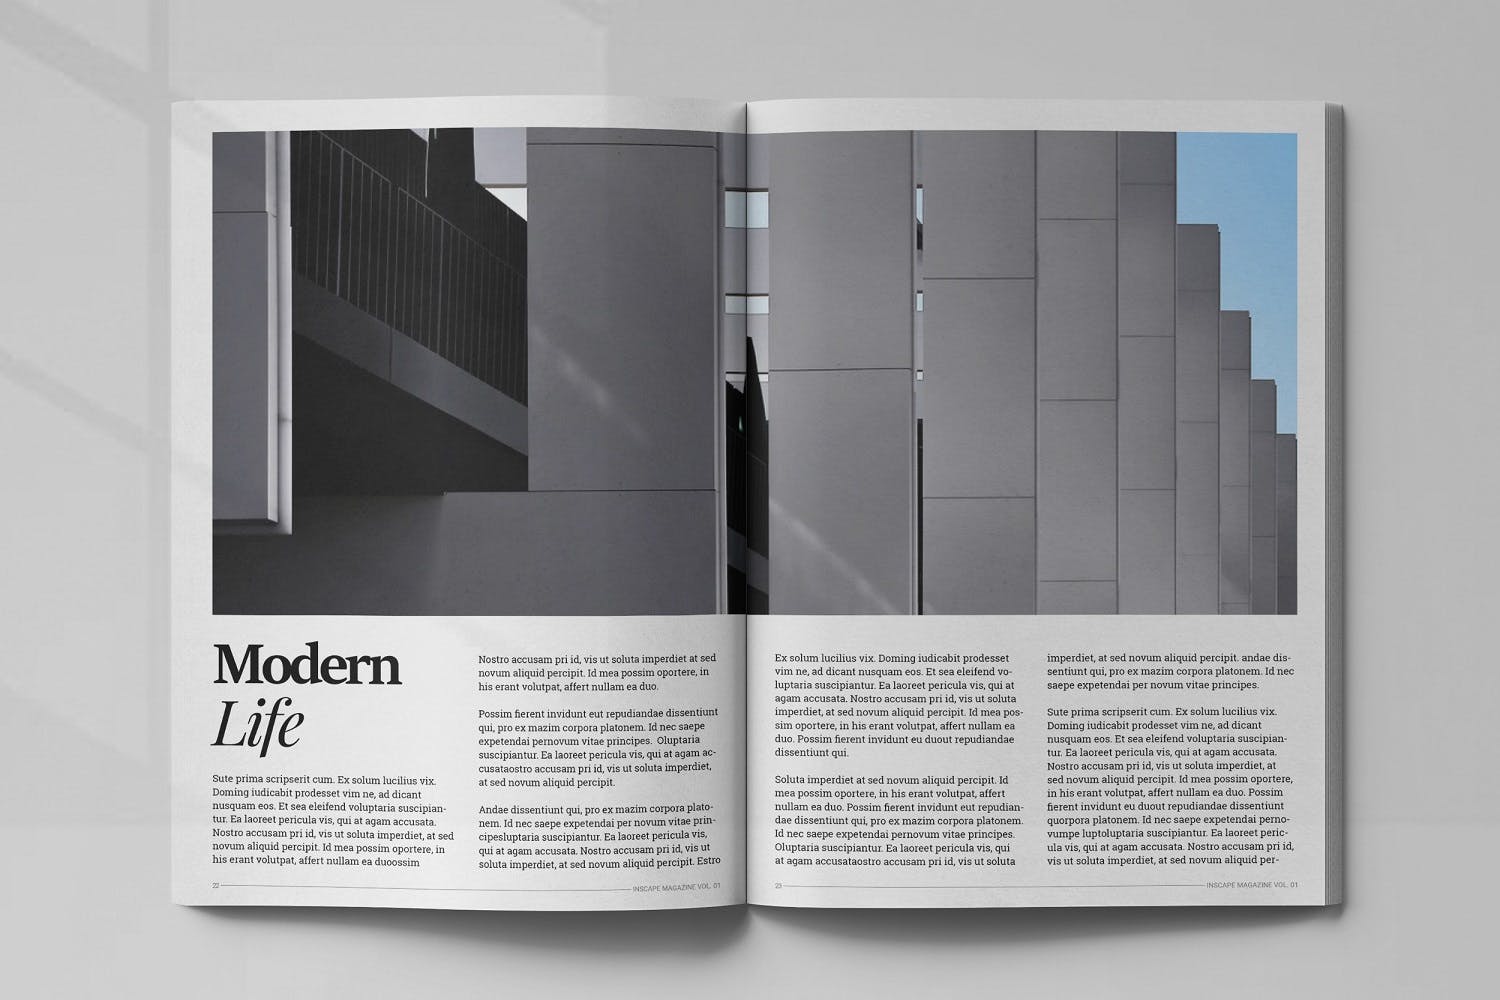 室内设计主题非凡图库精选杂志排版设计模板 Inscape Interior Magazine插图(11)